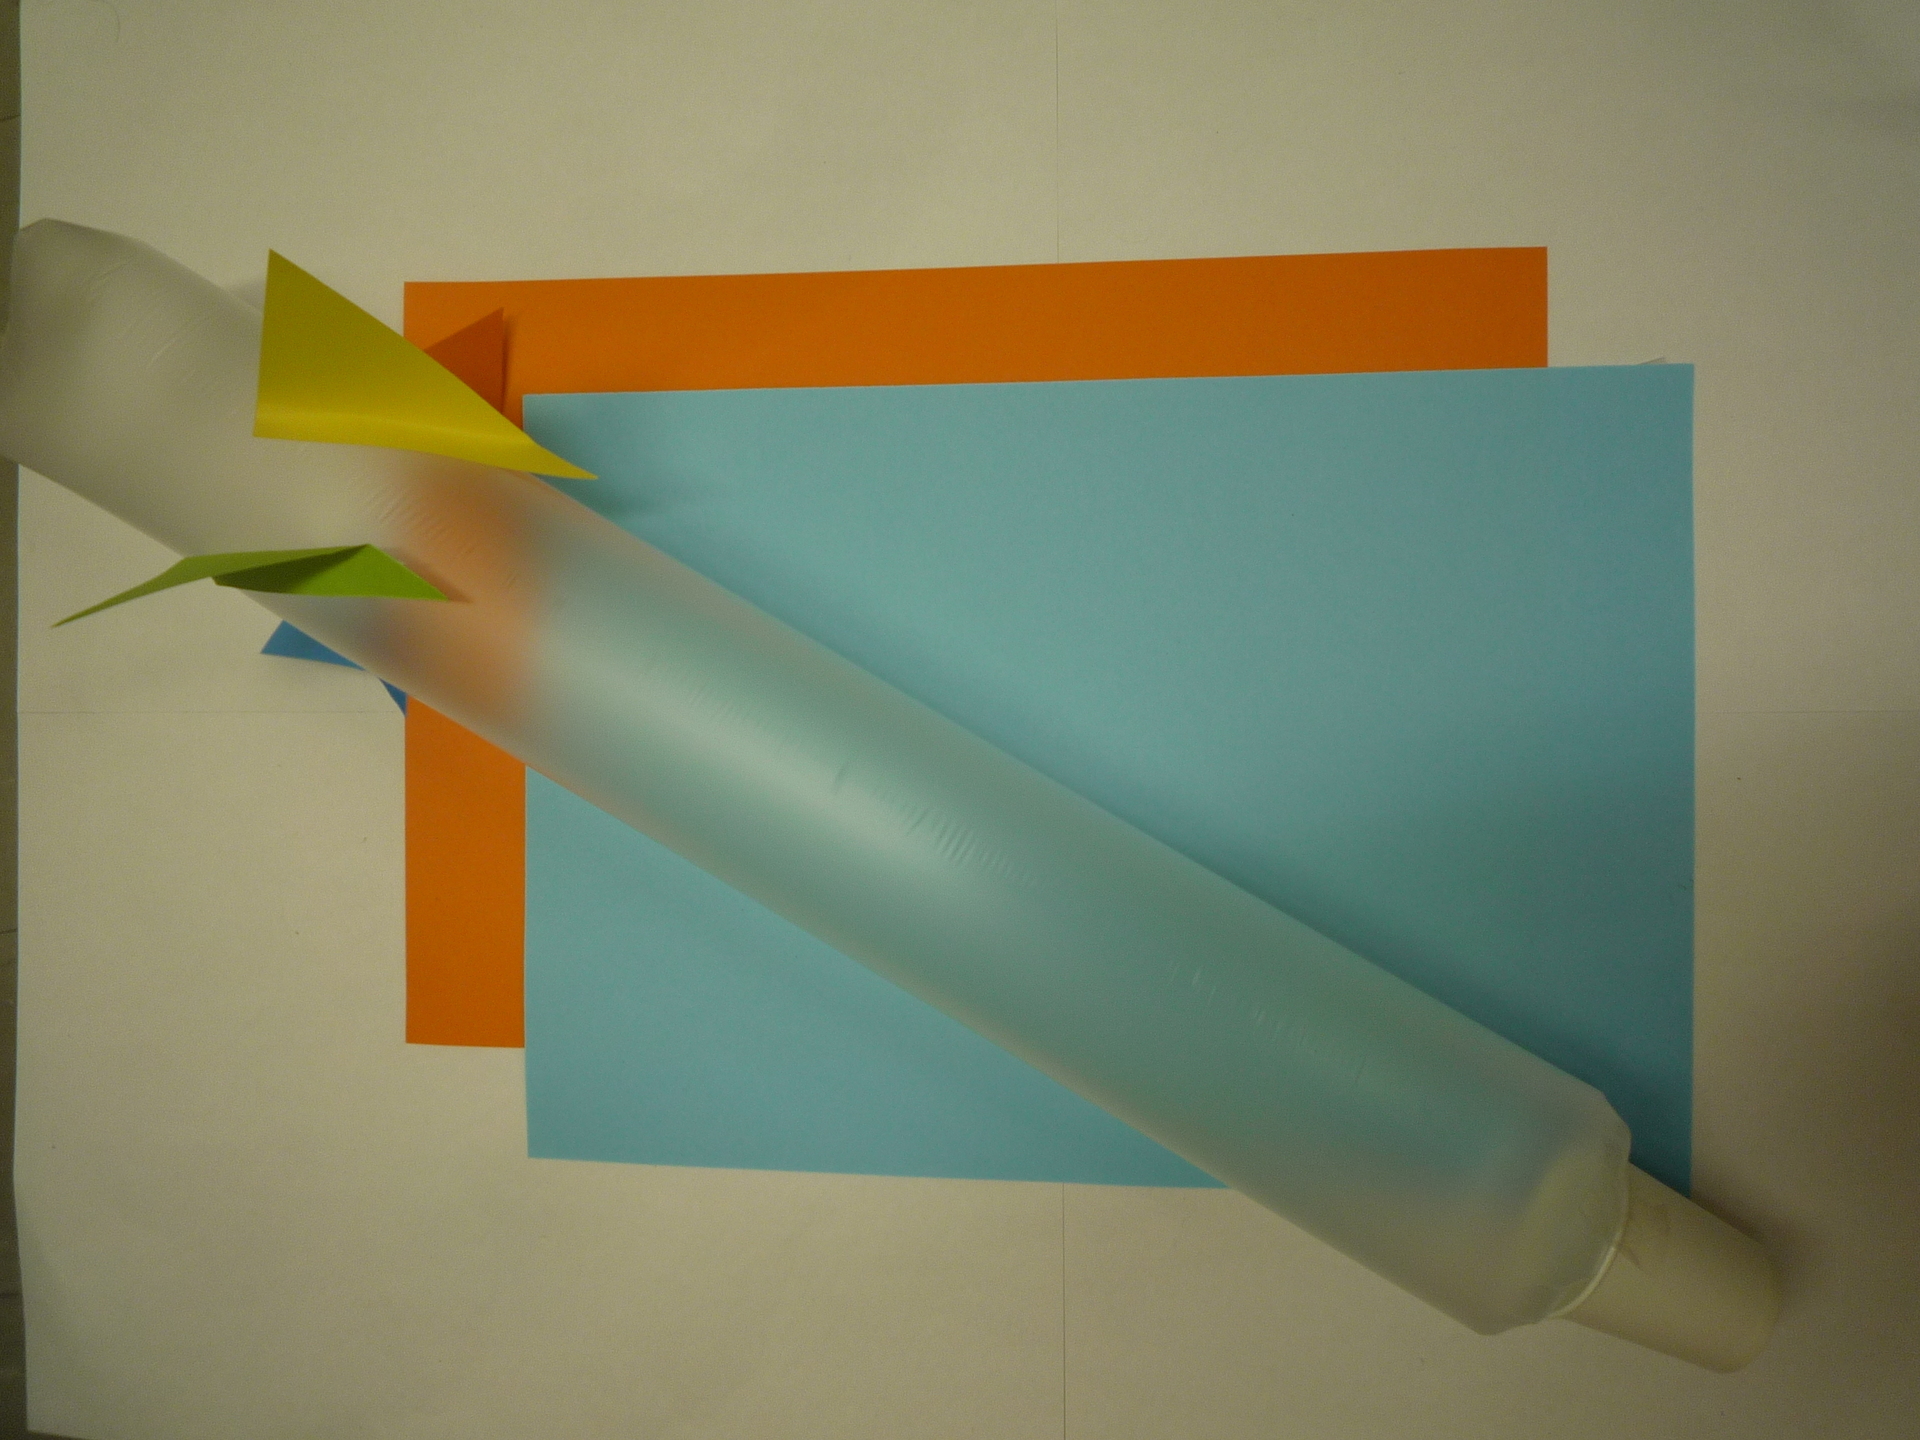 ものづくり 傘袋で作ろう ふくろロケットの作り方 みさき先生のスマイルサイエンスblog